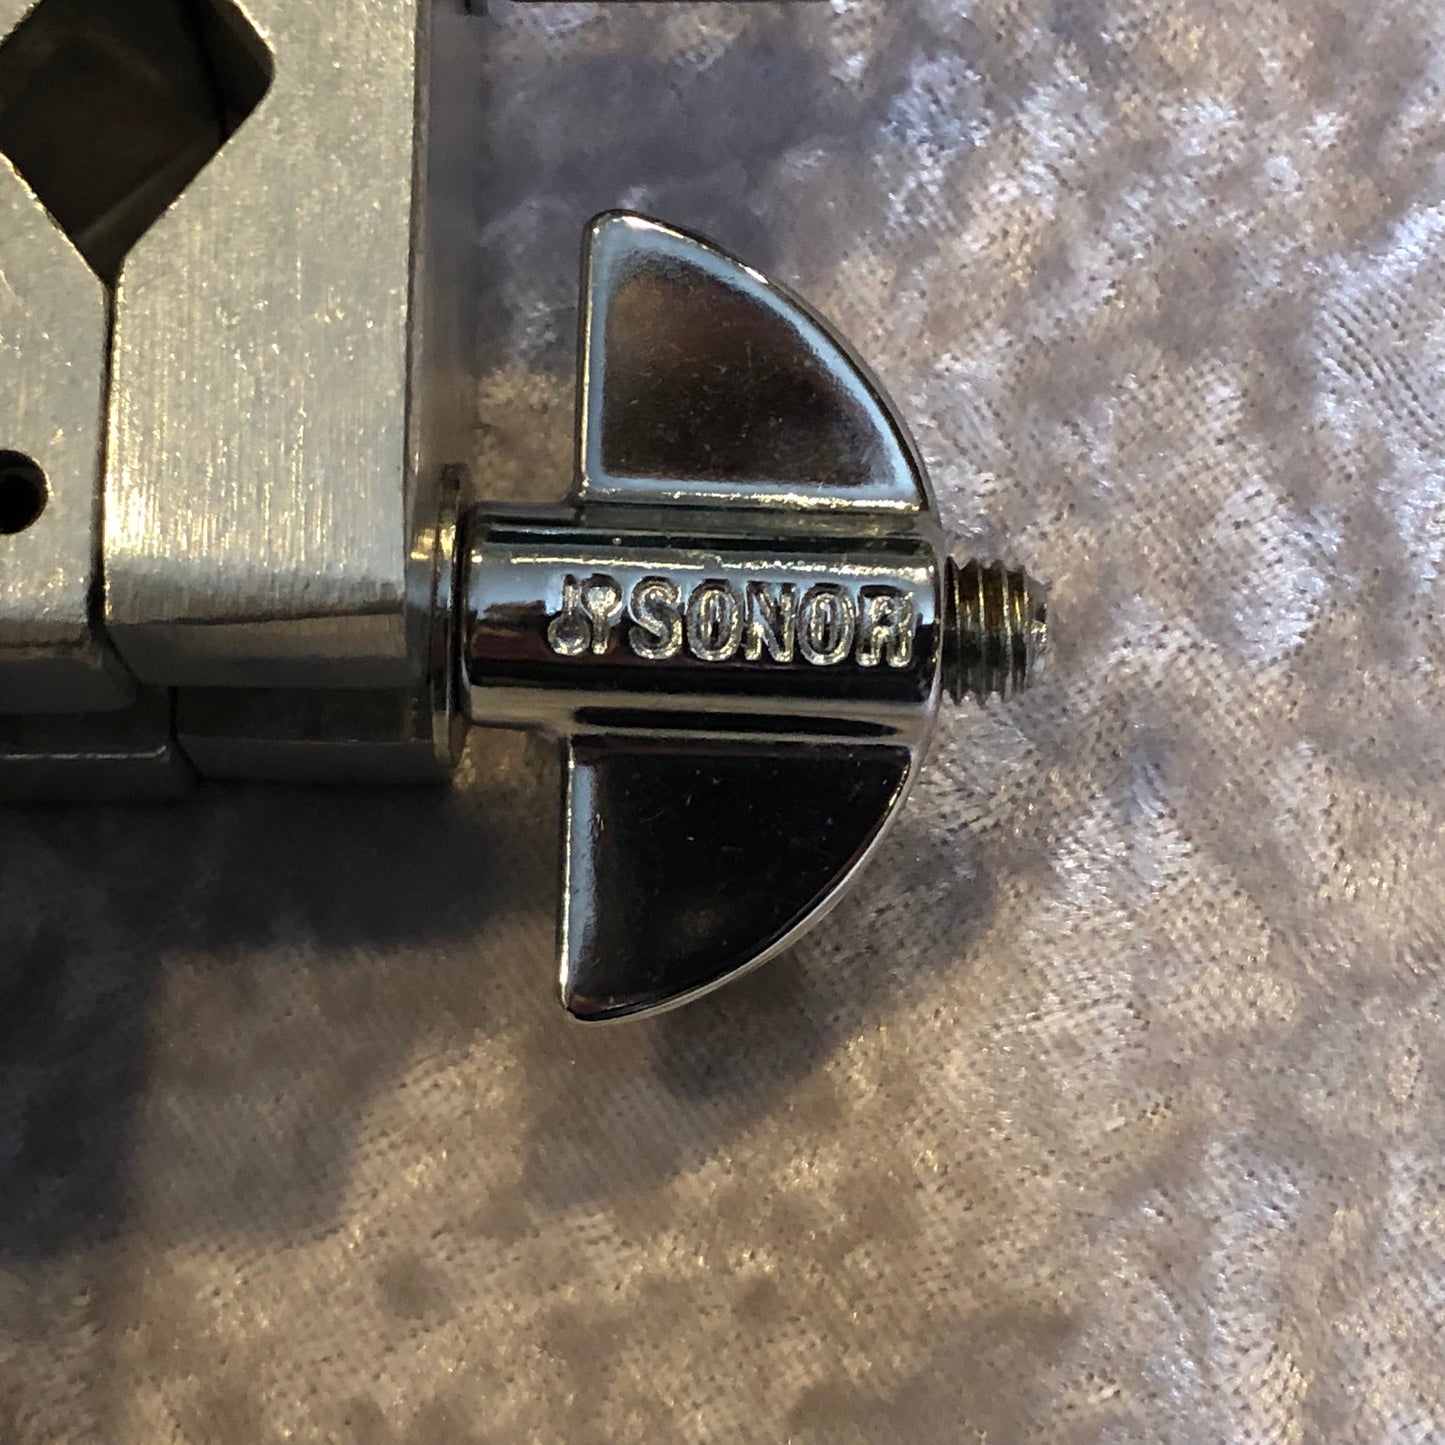 Sonor MC276 Super Grabber Multi-Clamp Adjustable Mount